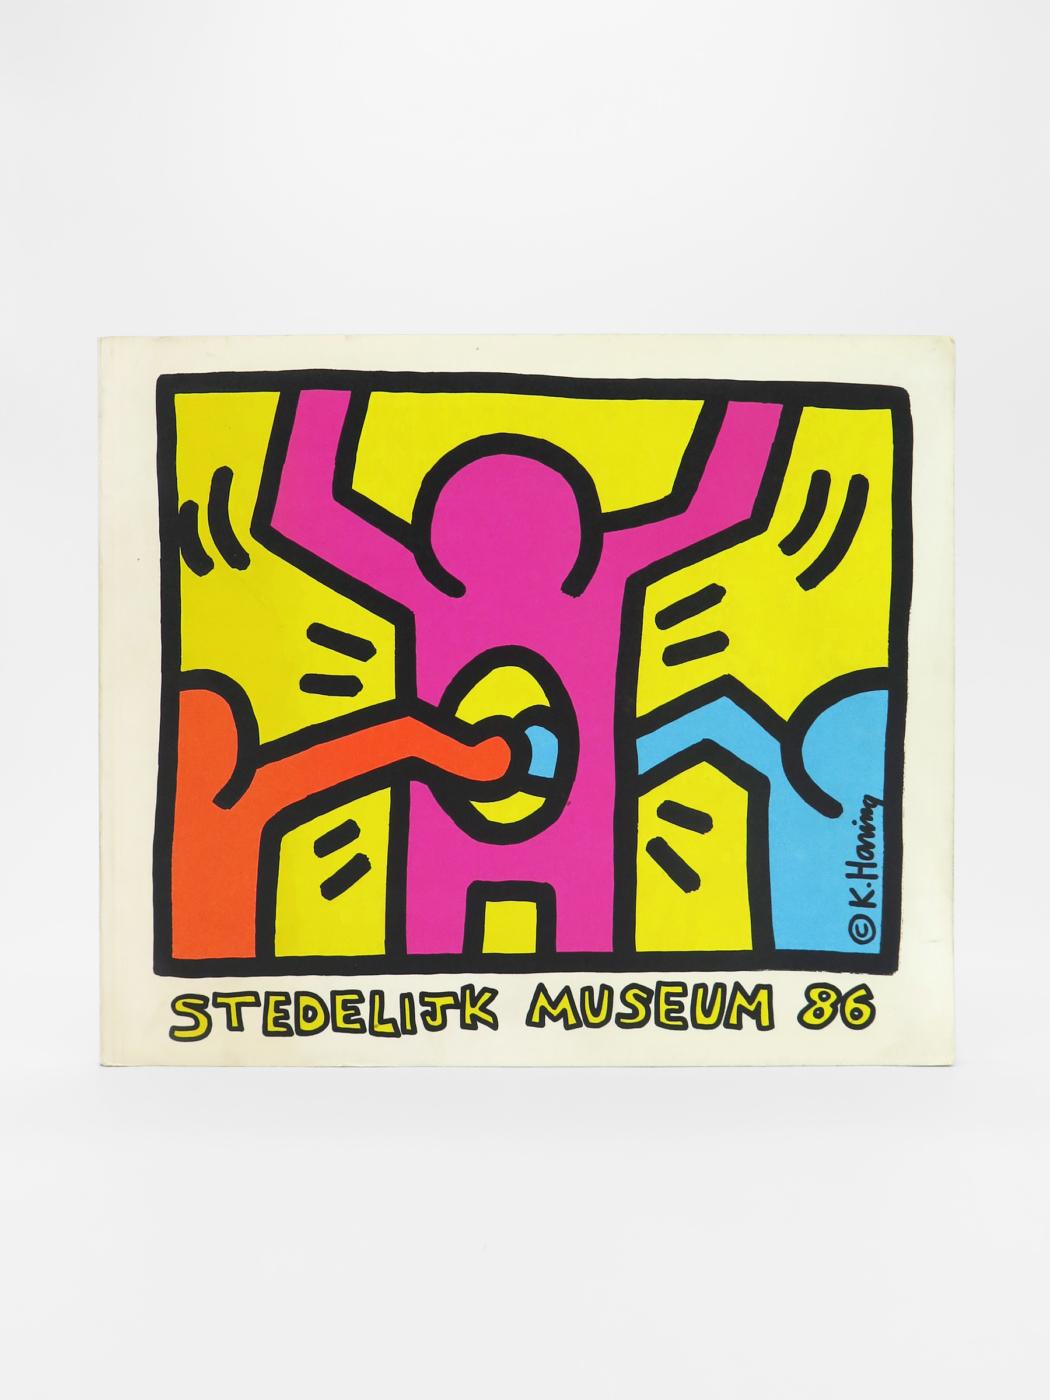 Keith Haring, Stedelijk Museum 86